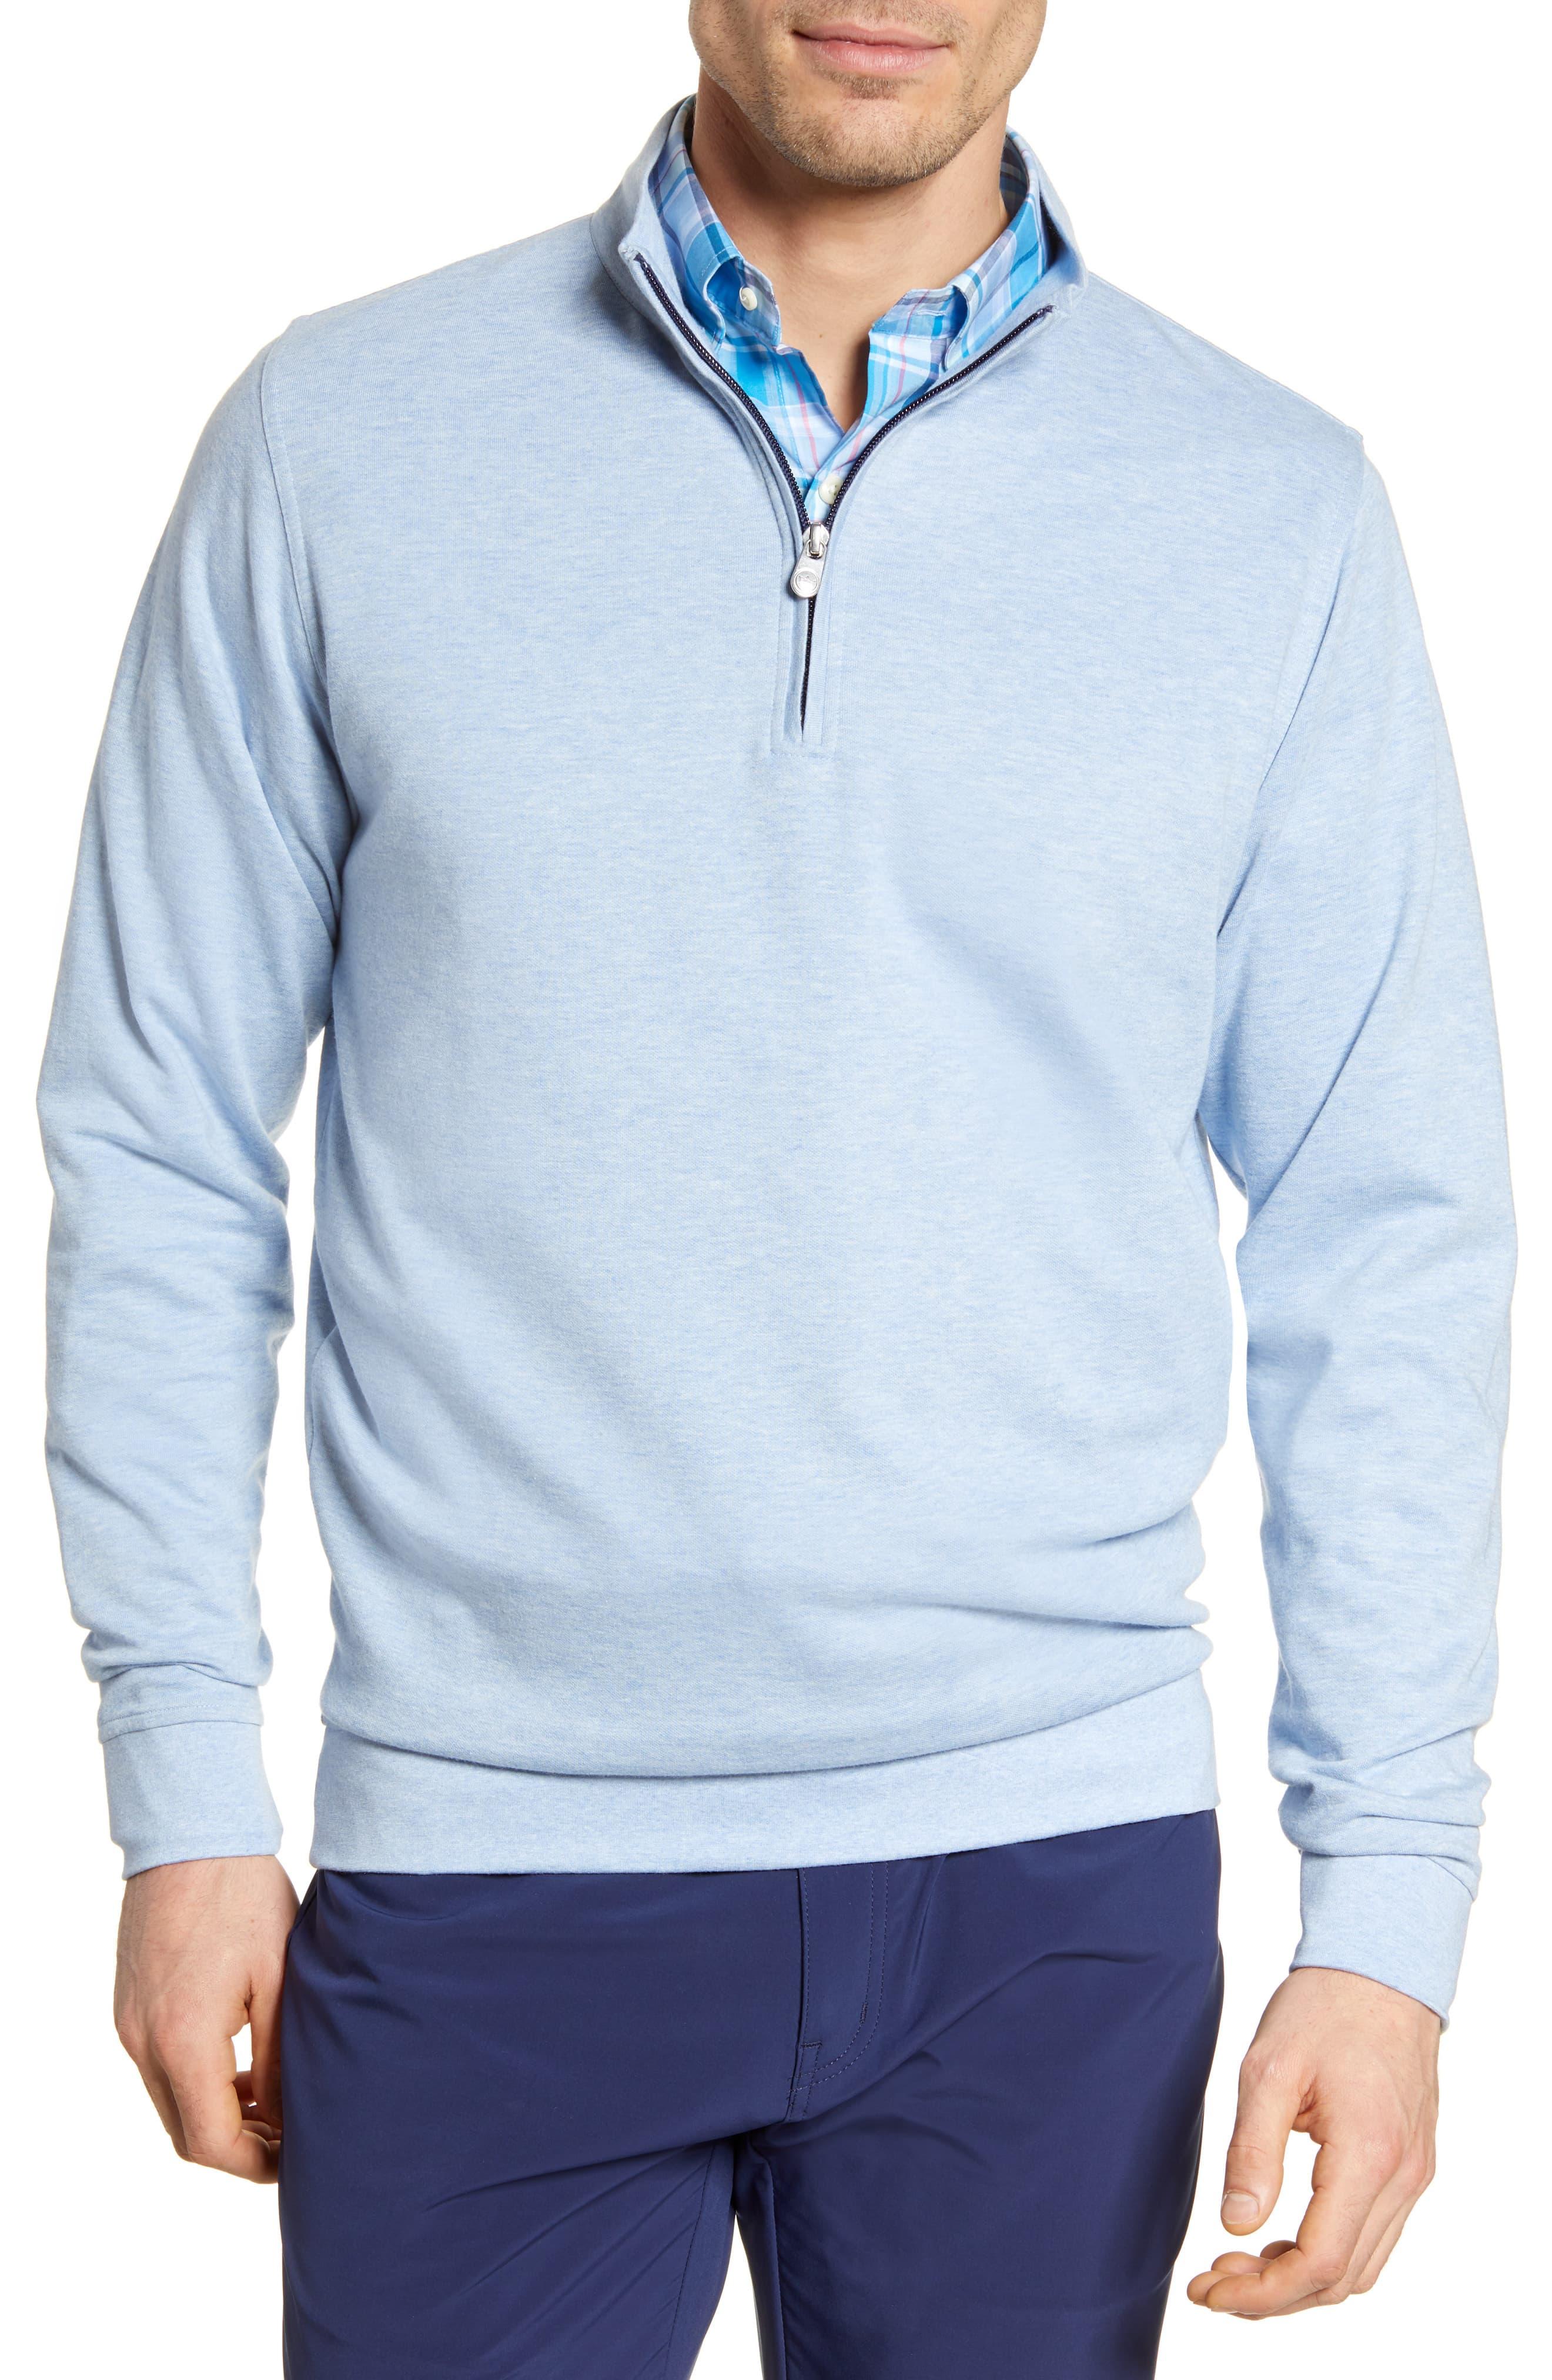 Peter Millar Crown Comfort Quarter Zip Pullover in Blue for Men - Lyst